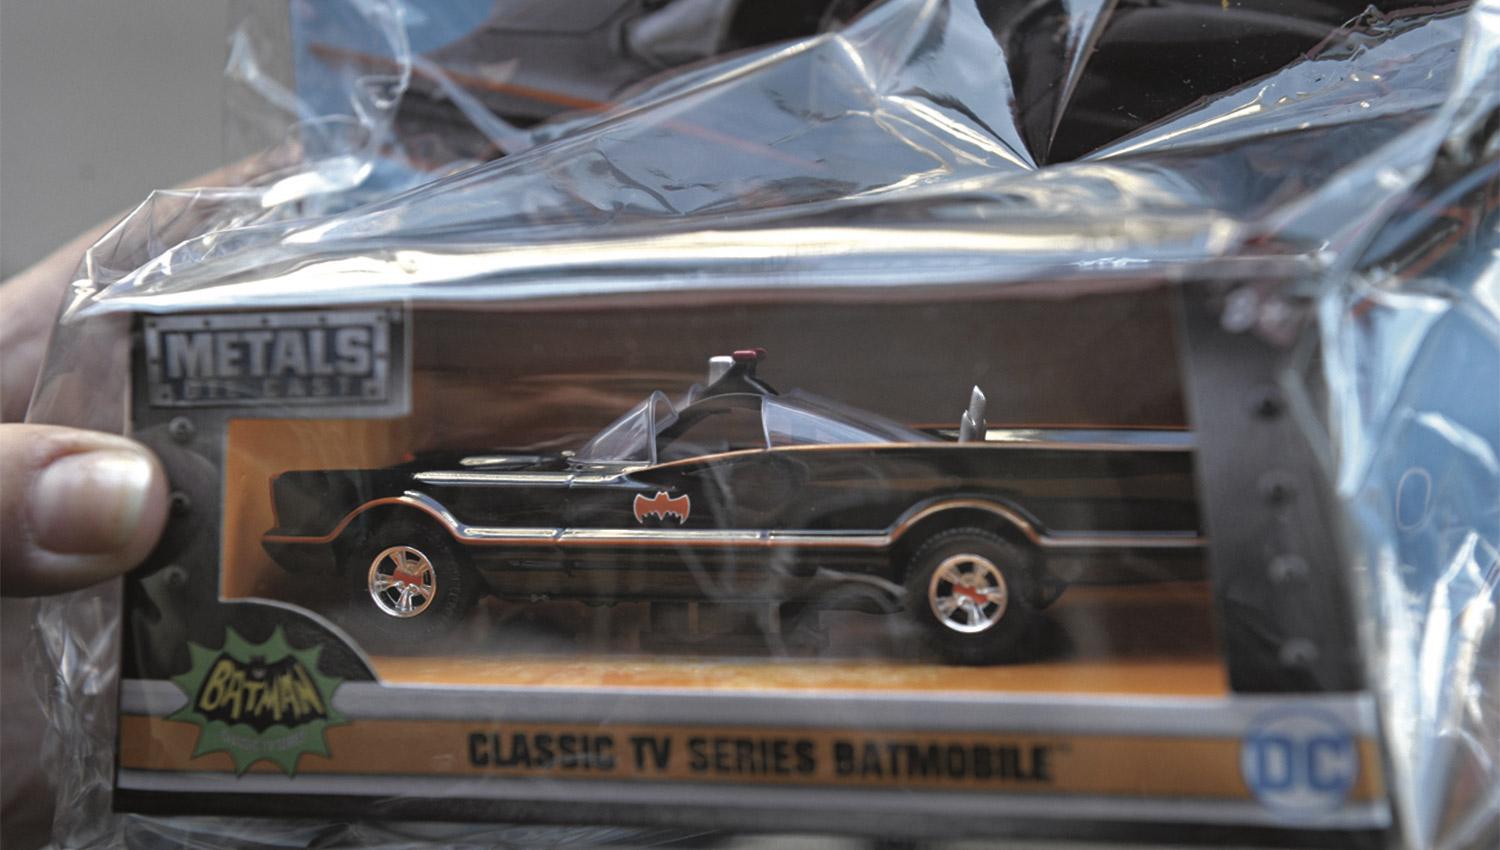 EL BATIMÓVIL. Una colección dedicada 100% a los autos que históricamente tuvo el superhéroe Batman. Abajo, la colección de Star Wars.